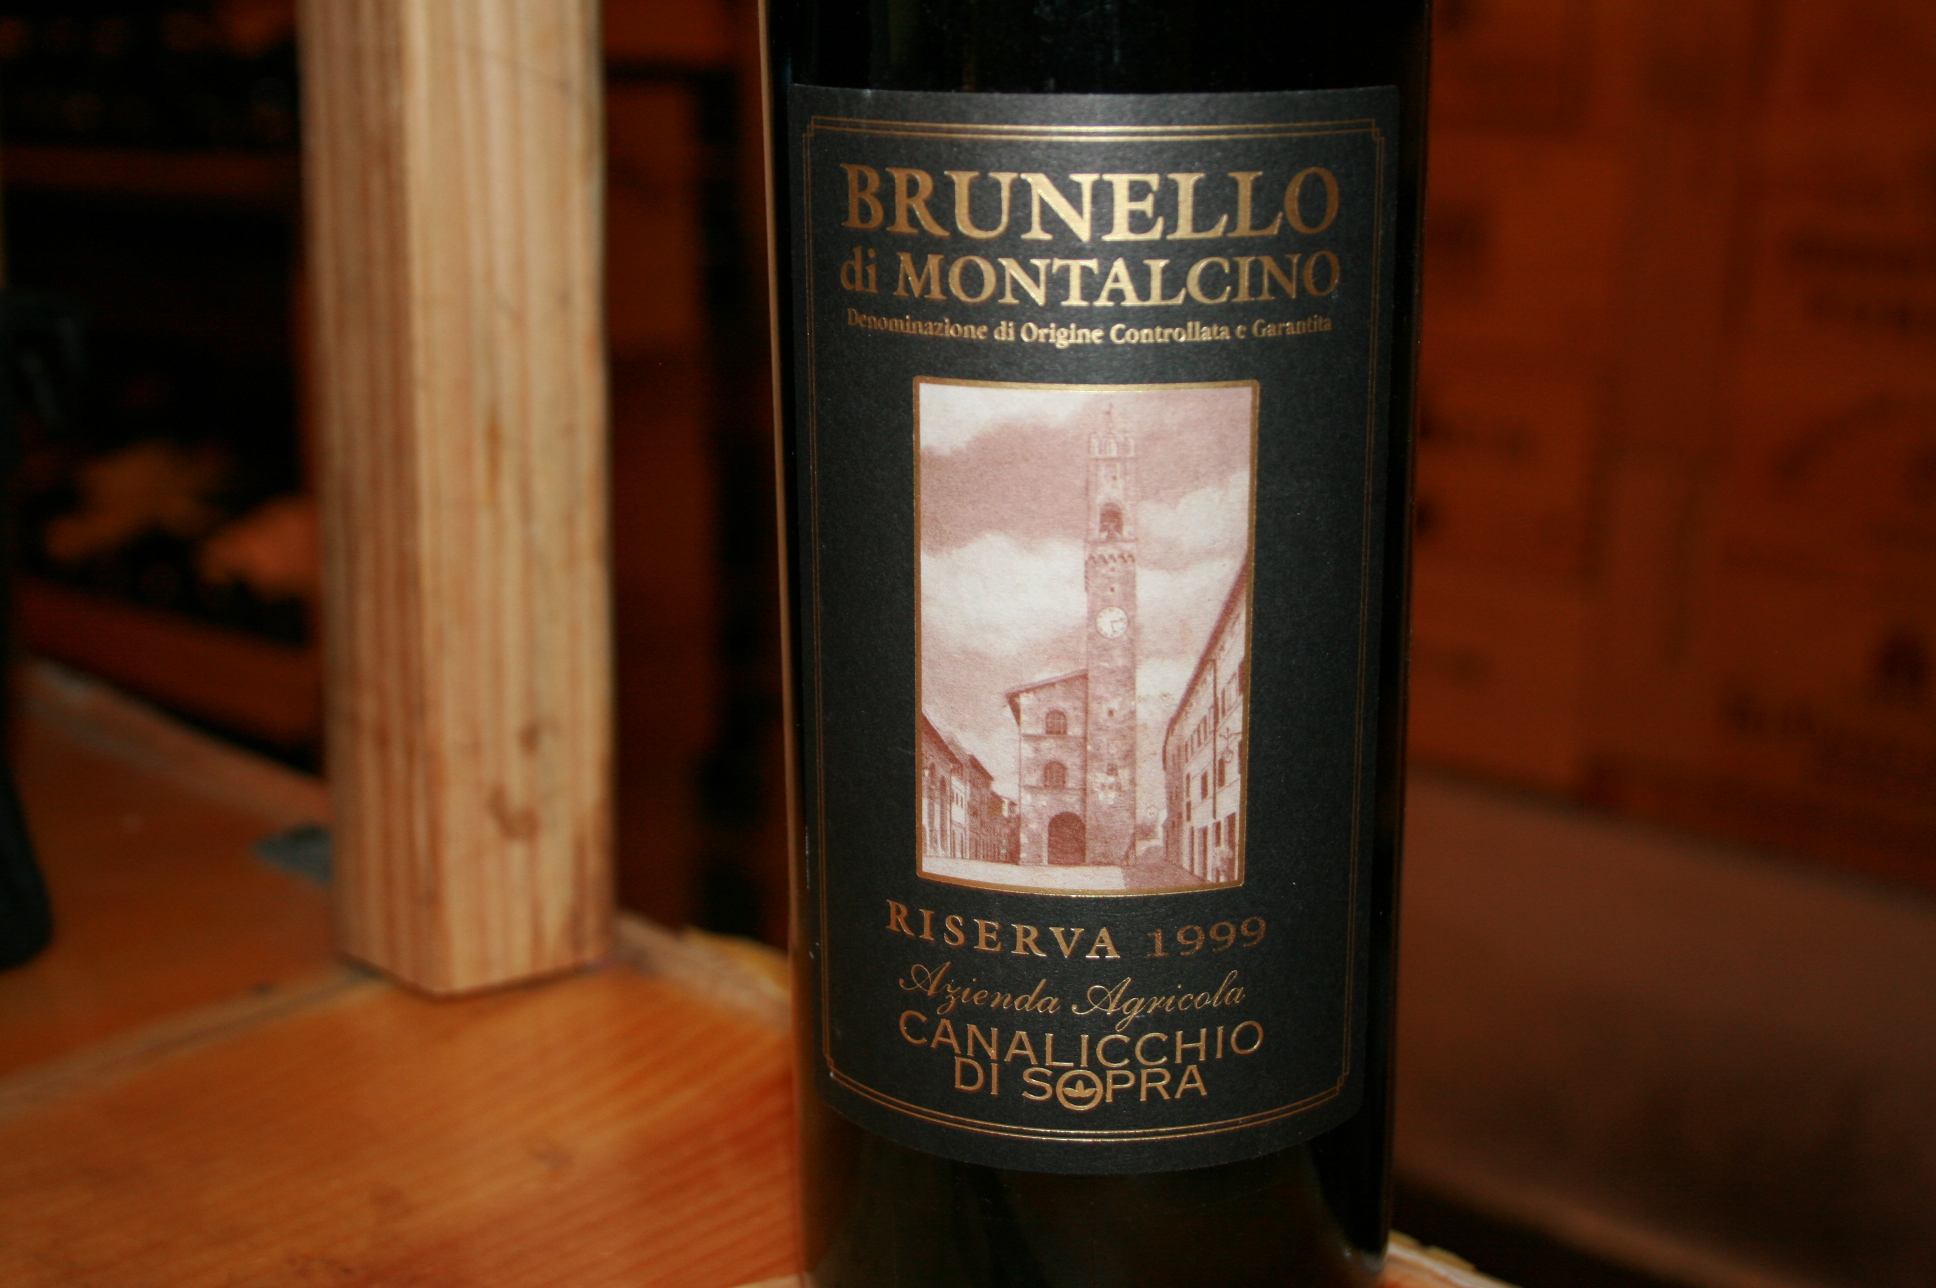 2000 Canalicchio Di Sopra Brunello di Montalcino - click image for full description